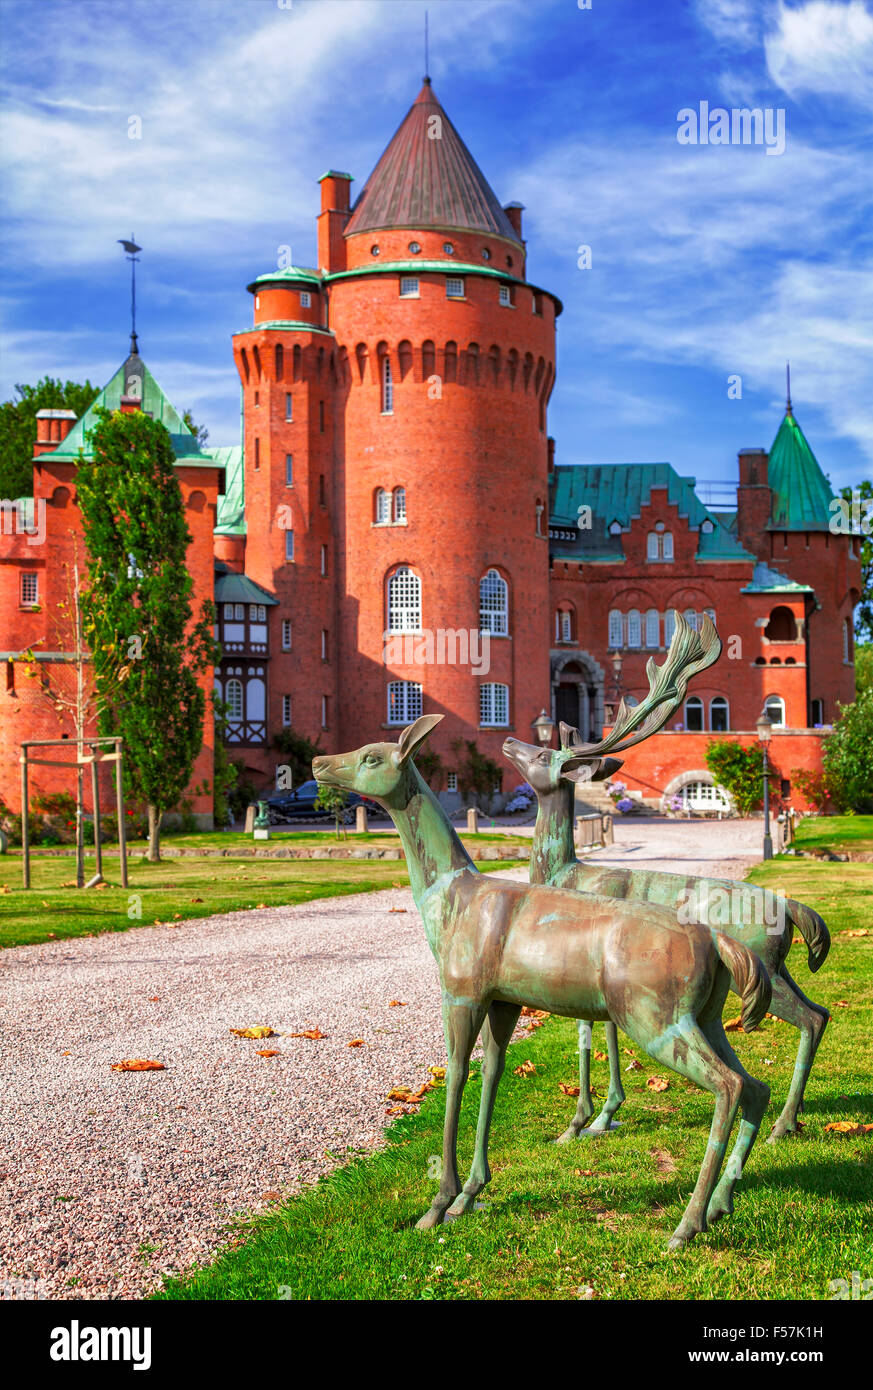 Bild der Burg Hjularod in Schweden, in einem französischen mittelalterlichen Romantik-Stil gebaut. Stockfoto